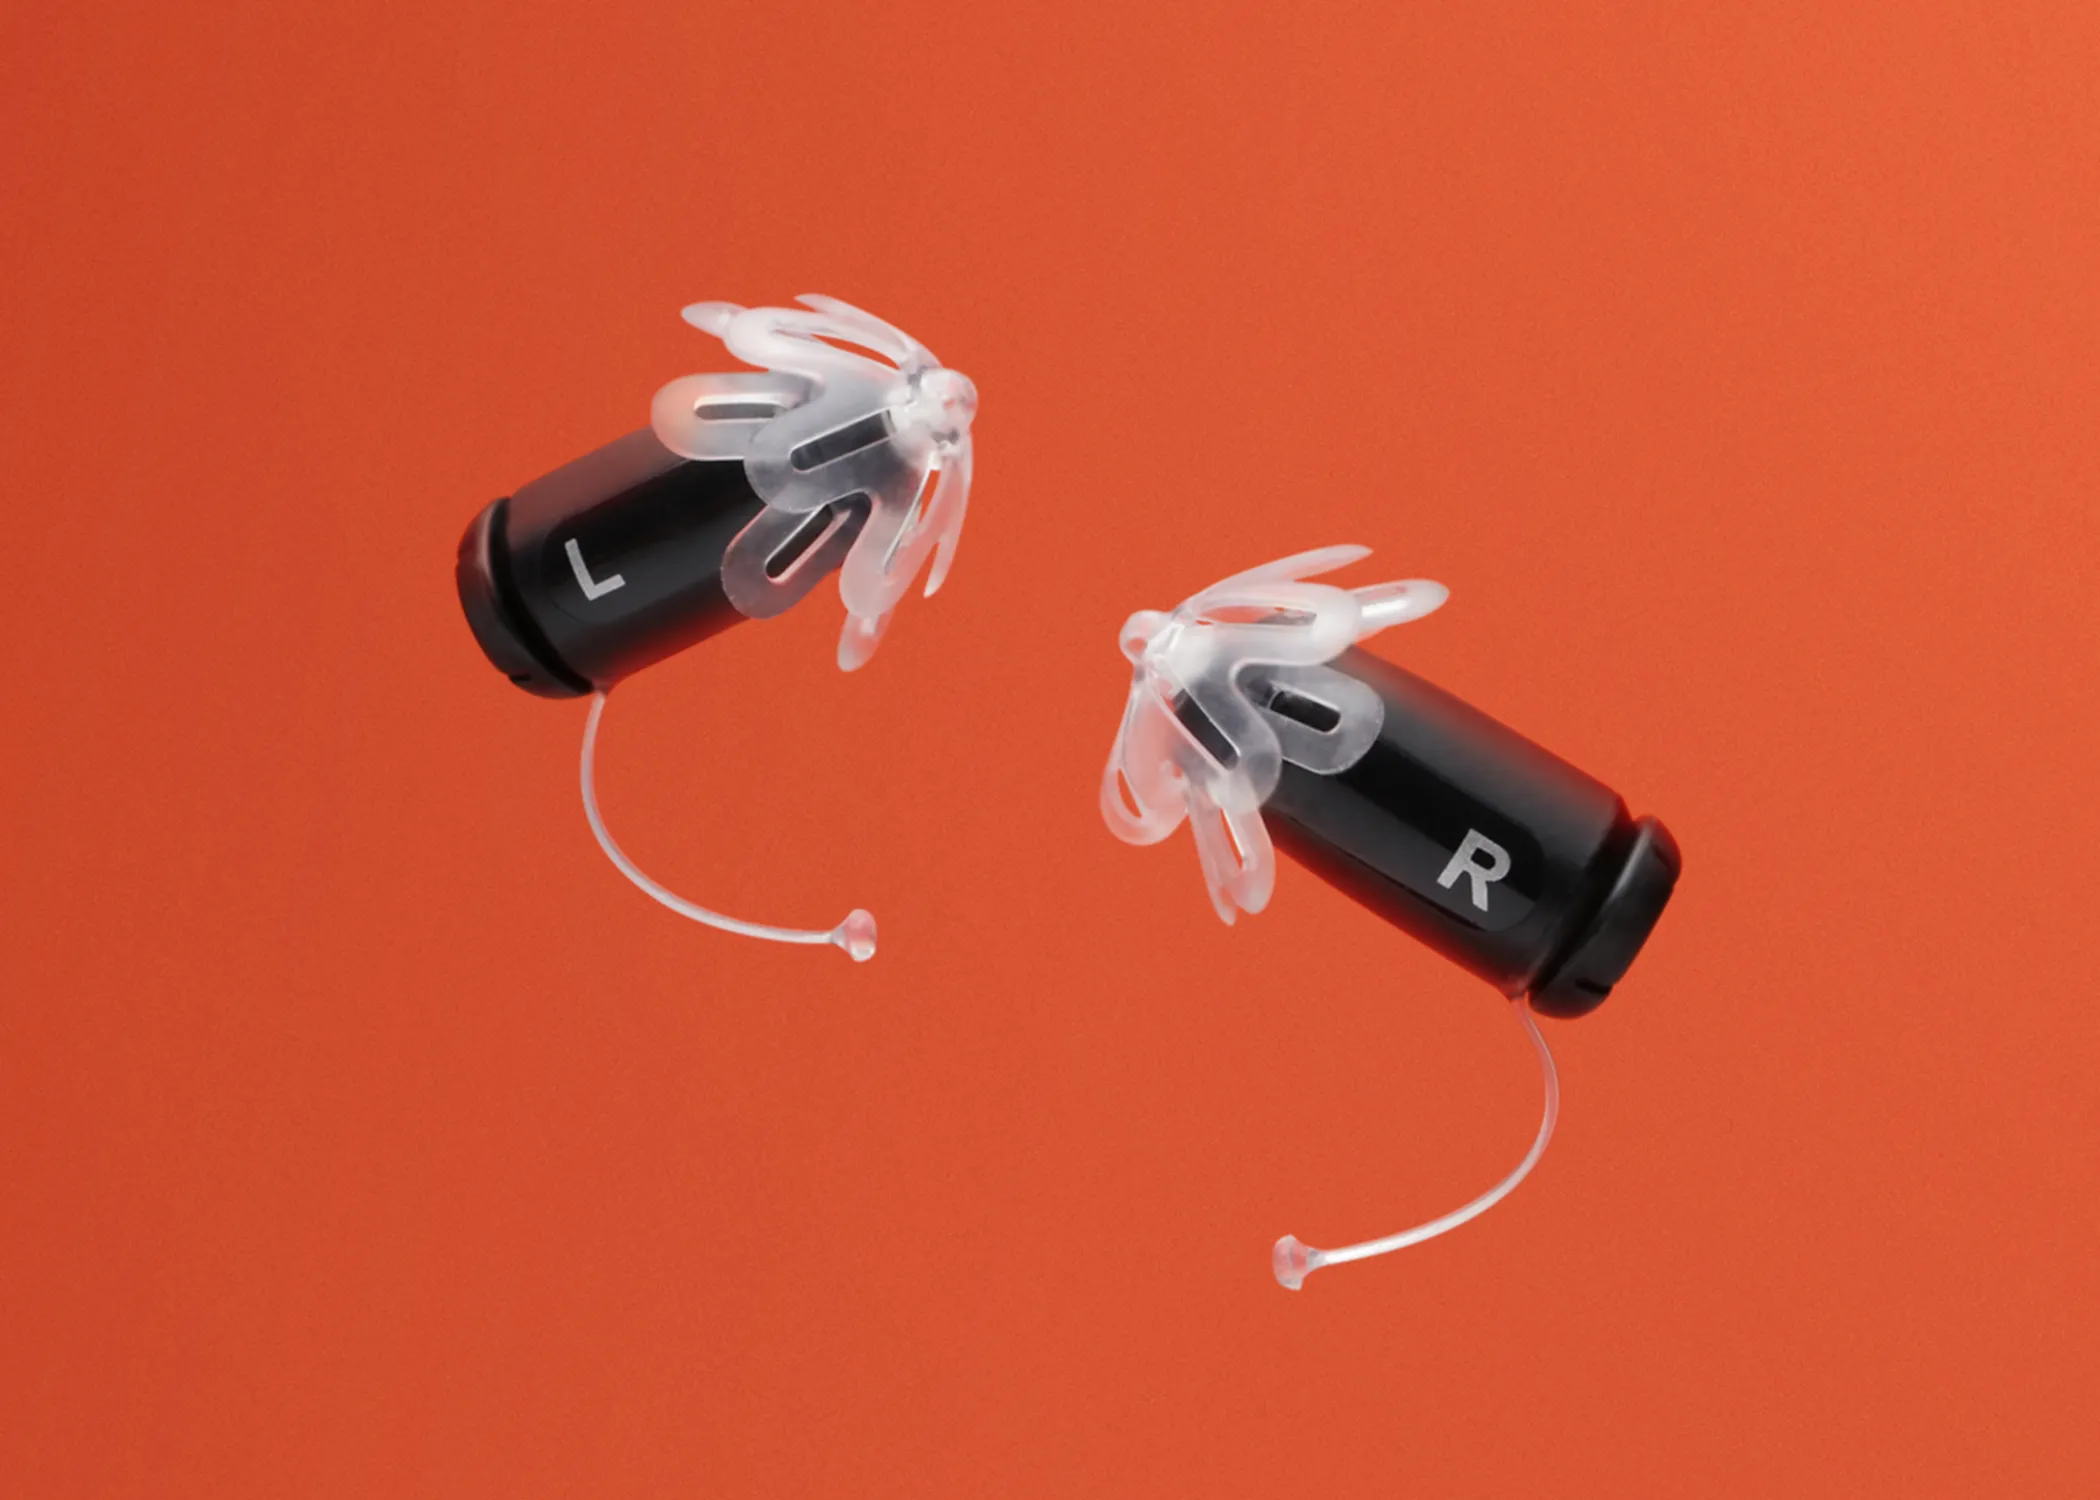 Closeup of Eargo 5 hearing aids